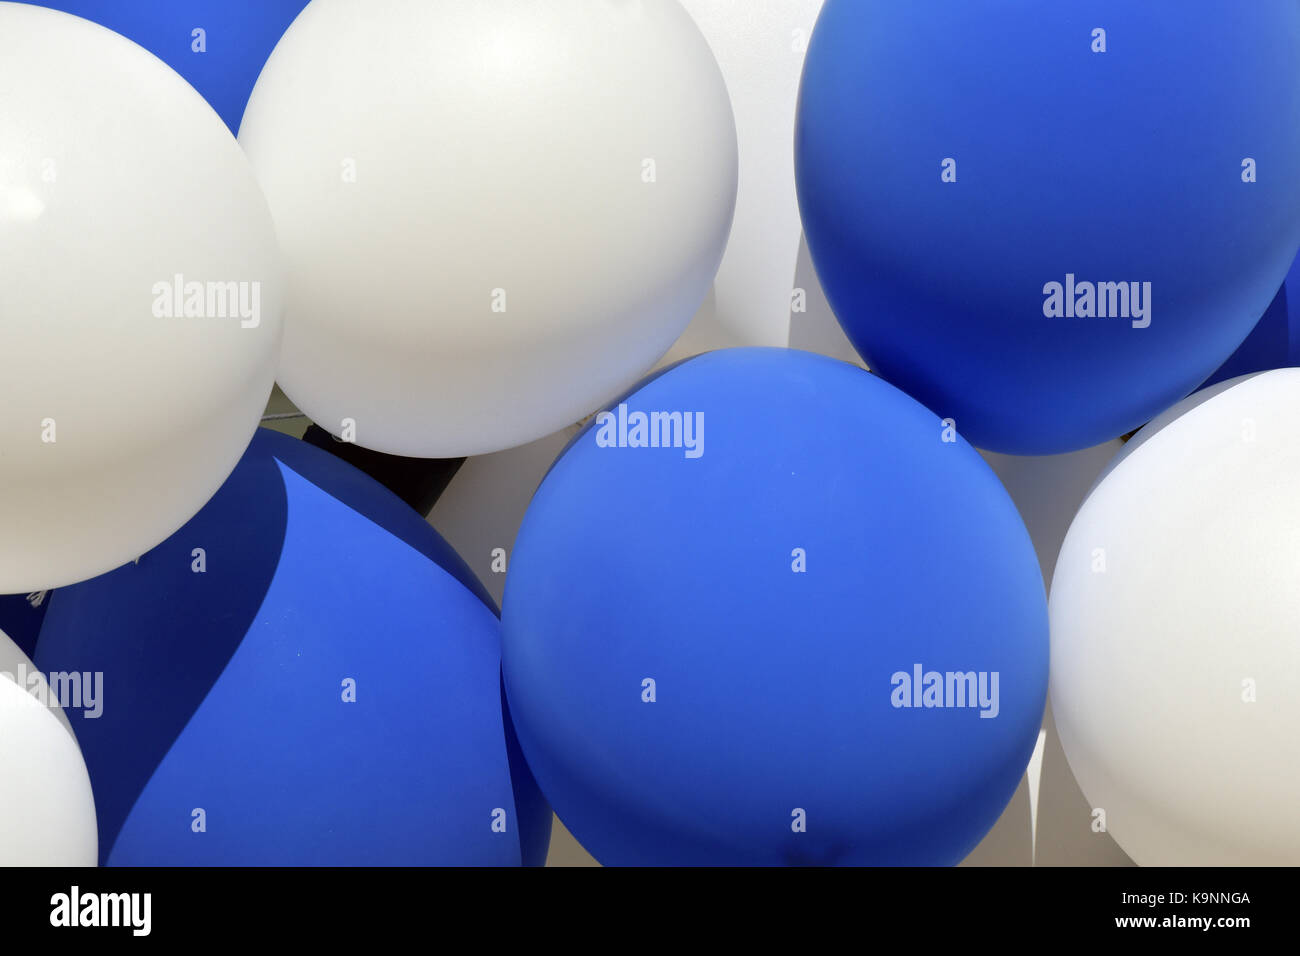 Ein Bündel von blauen und weißen Luftballons dicht gedrängt zusammen, die in der Luft schweben oder gebündelt und bilden ein Muster. aufgeblasene Luftballons für Dekorationen. Stockfoto